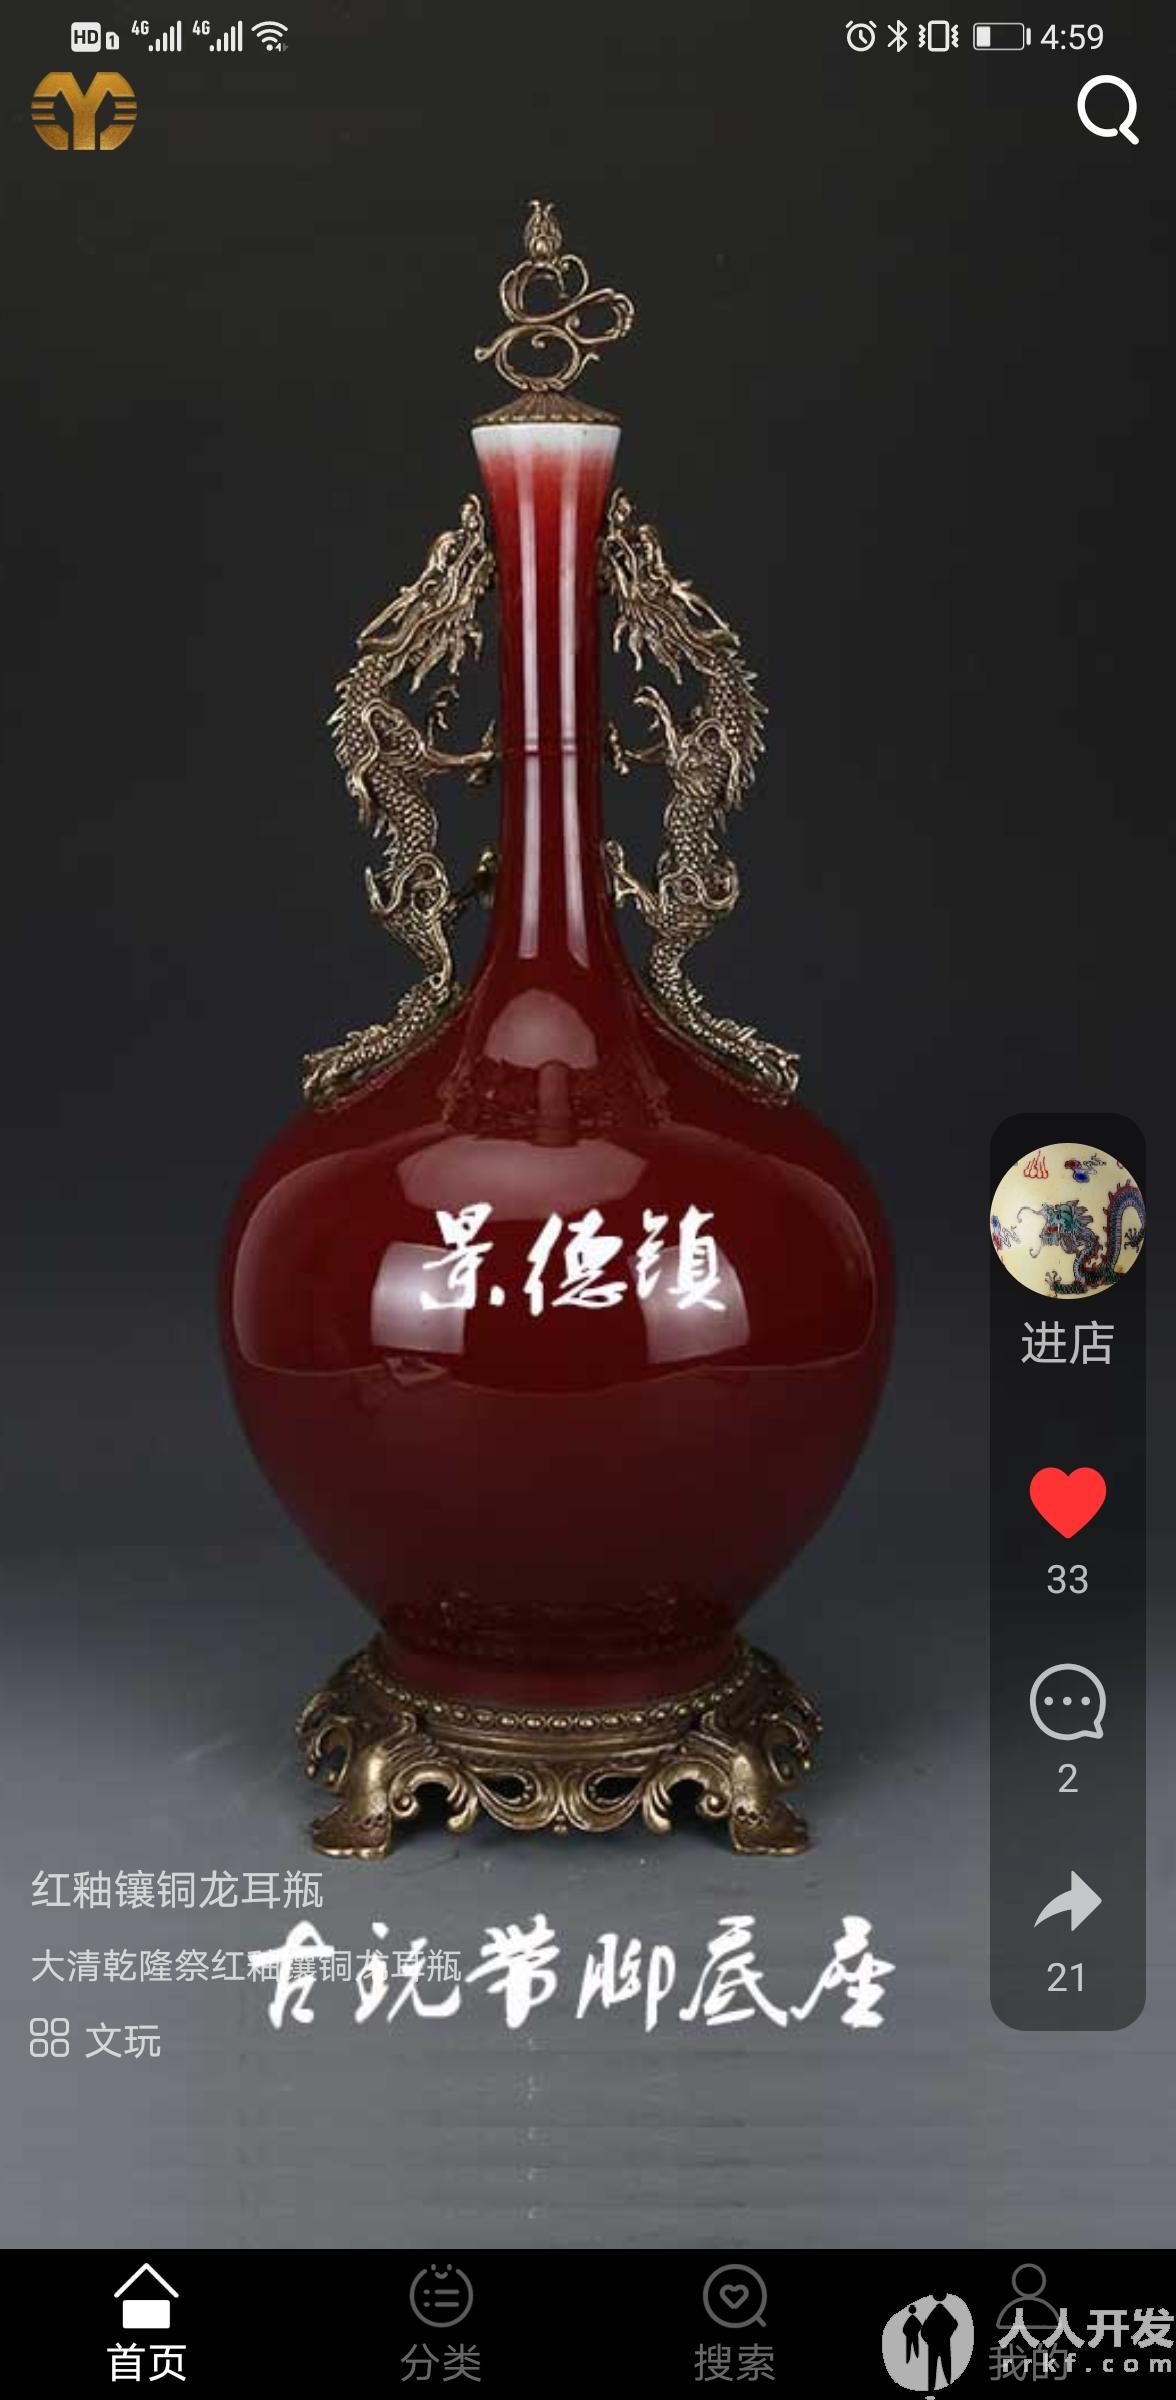 Screenshot 20210423 165943 com.yiyuanyoudao.app